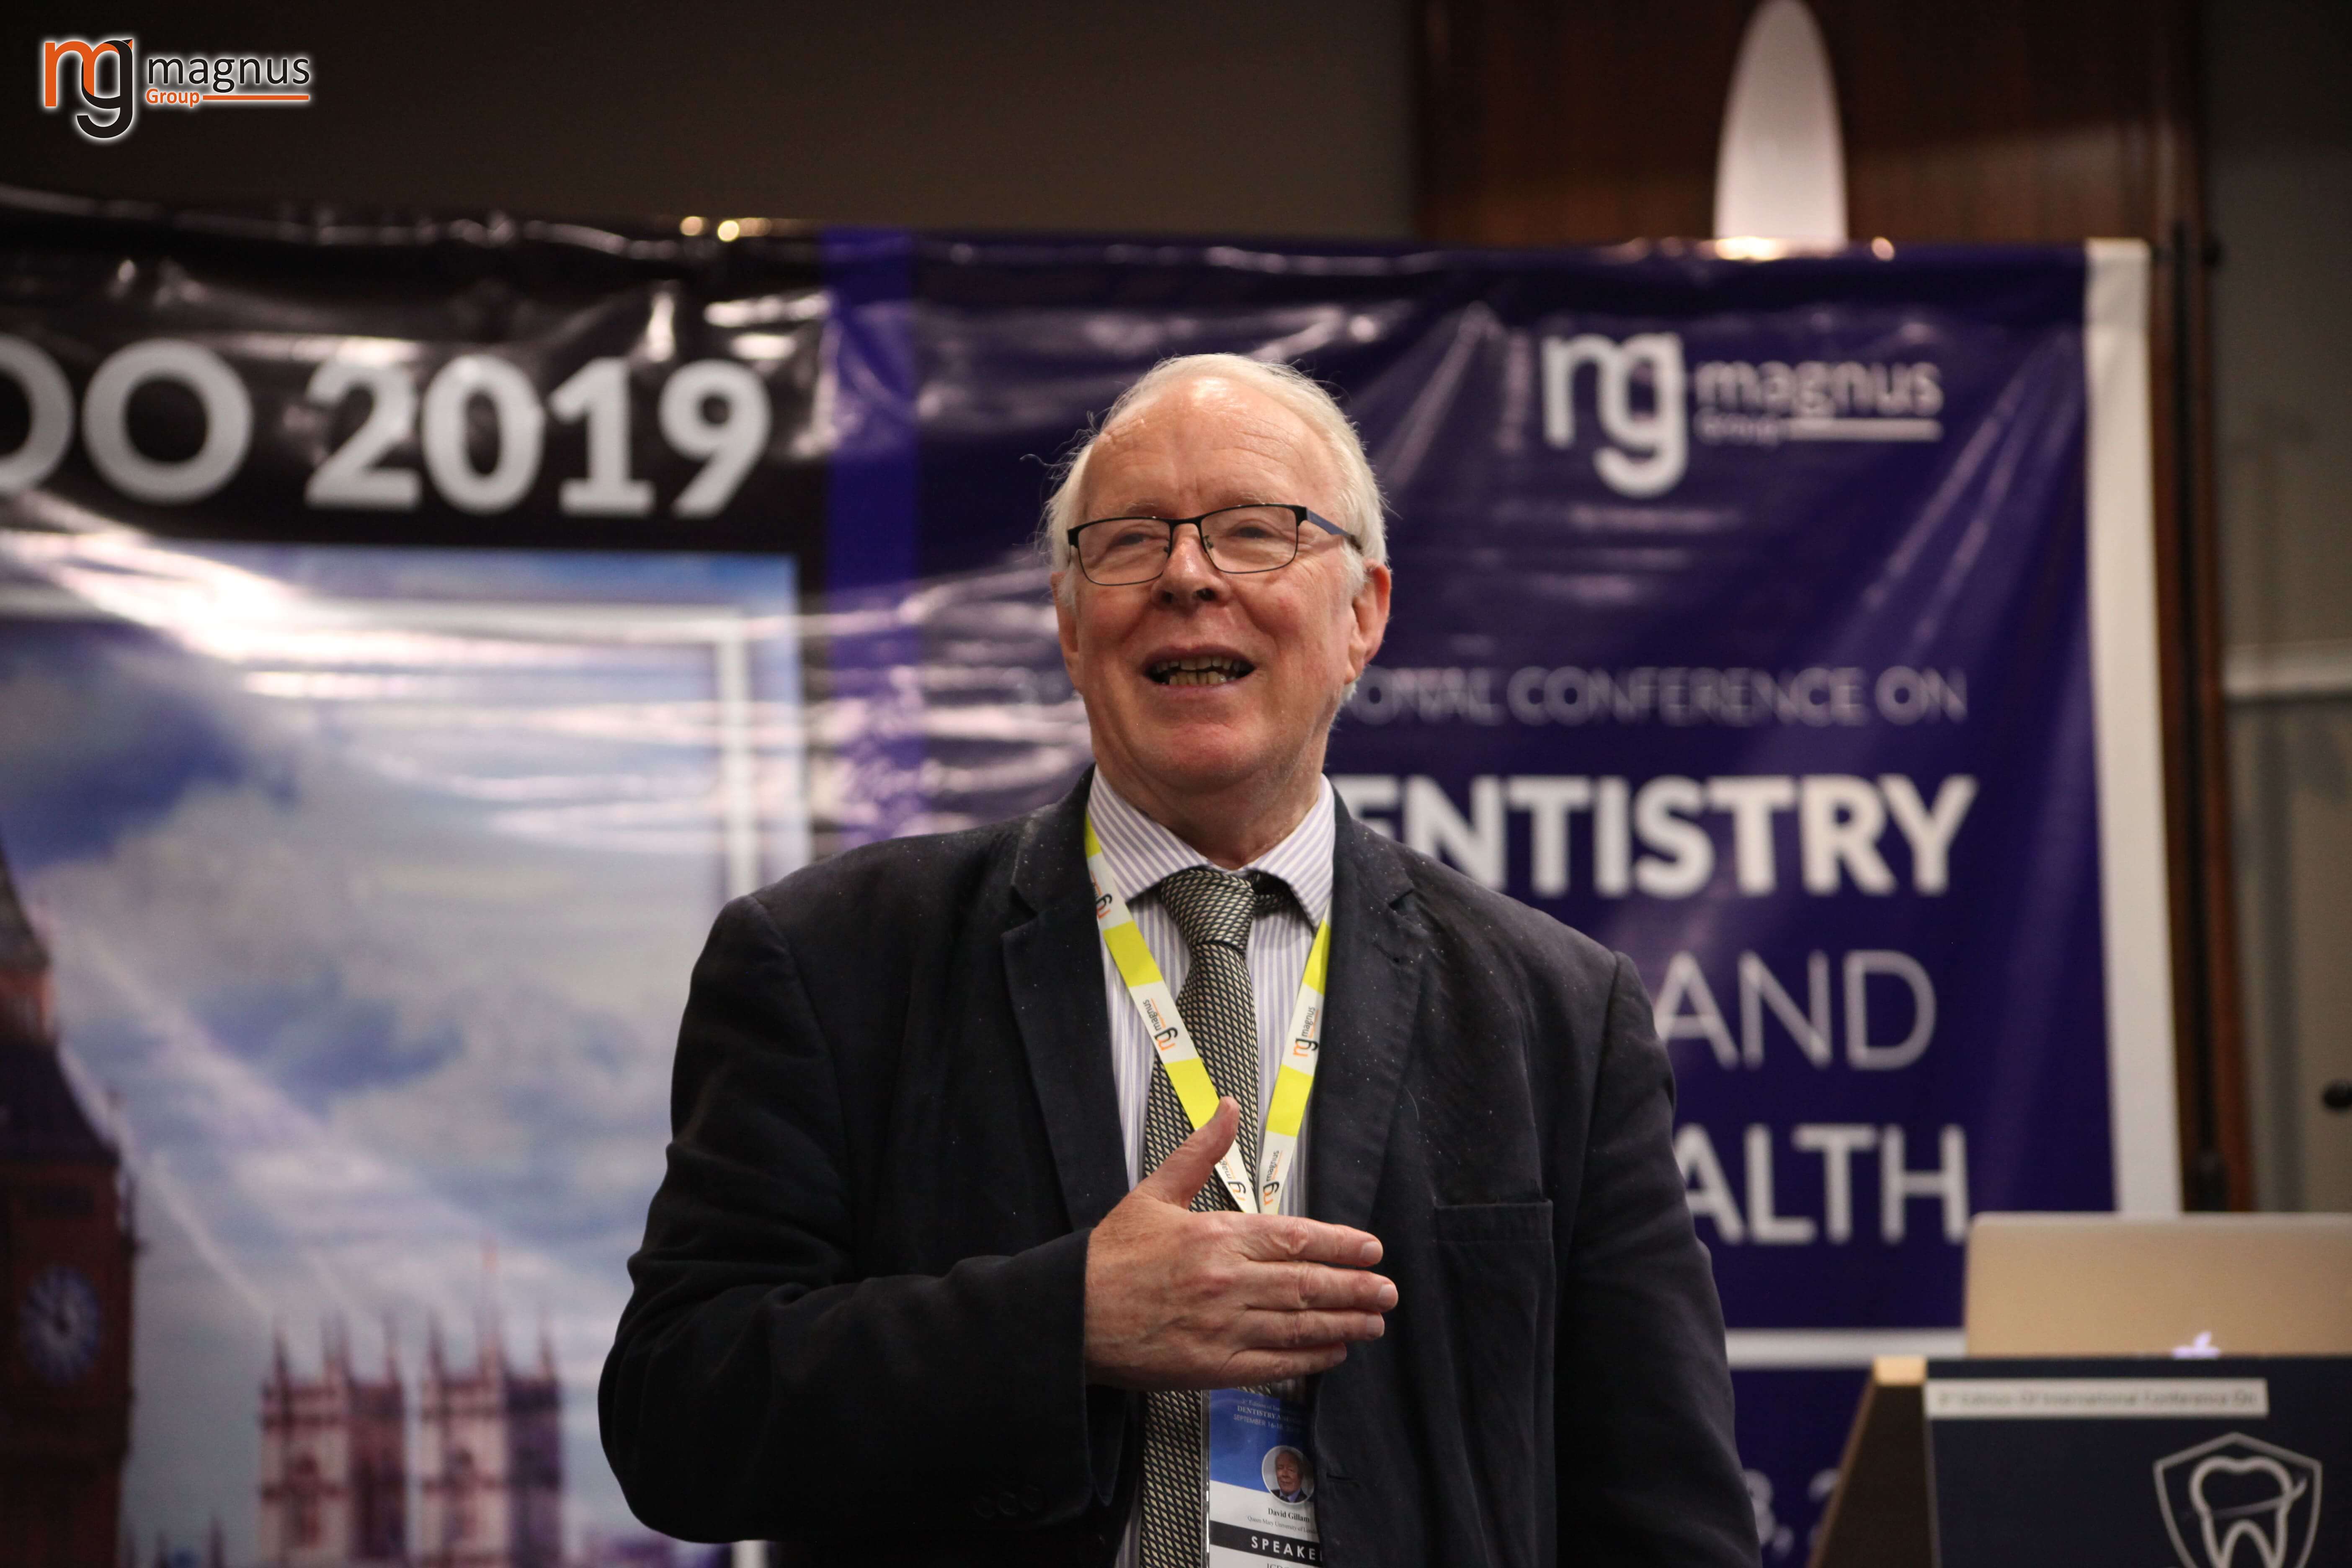  Oral Health Conferences -David Gillam